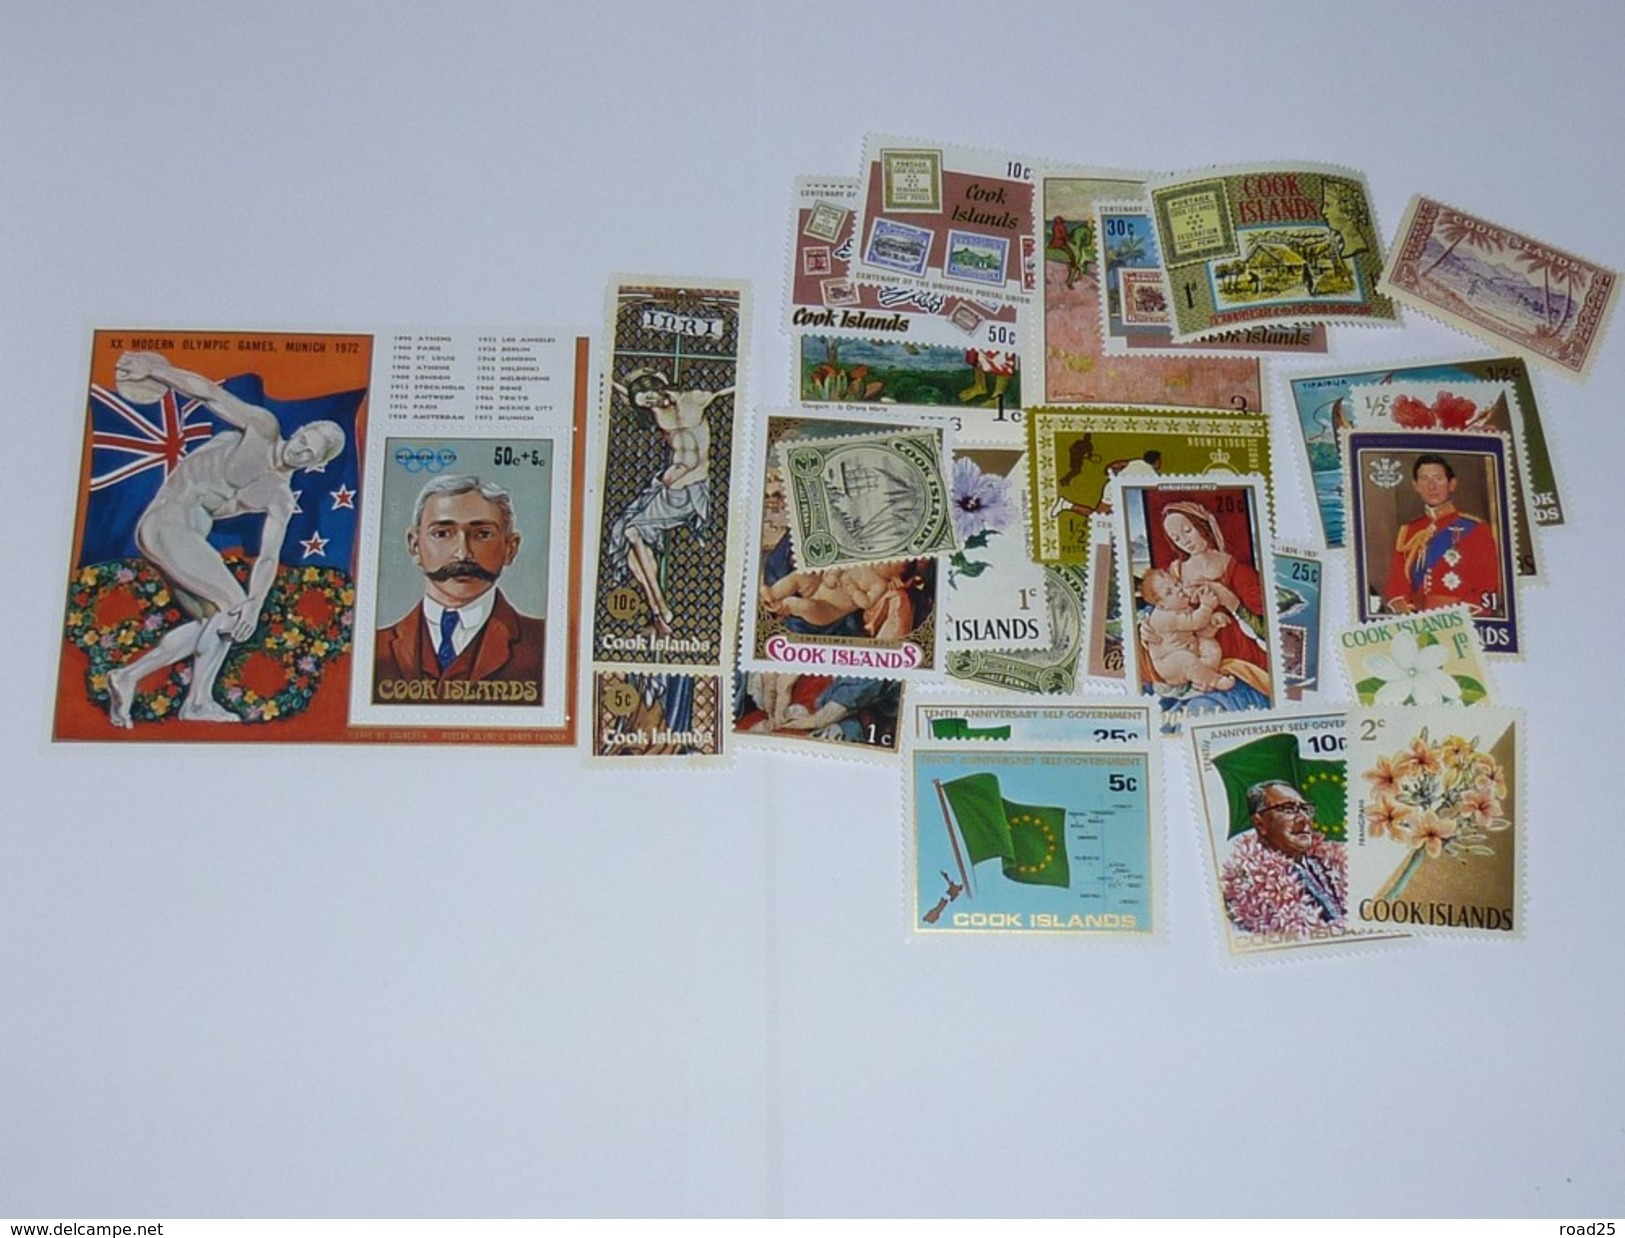 Océanie : stock de timbres neuf sans charnière sous pochettes, tout pays et territoires